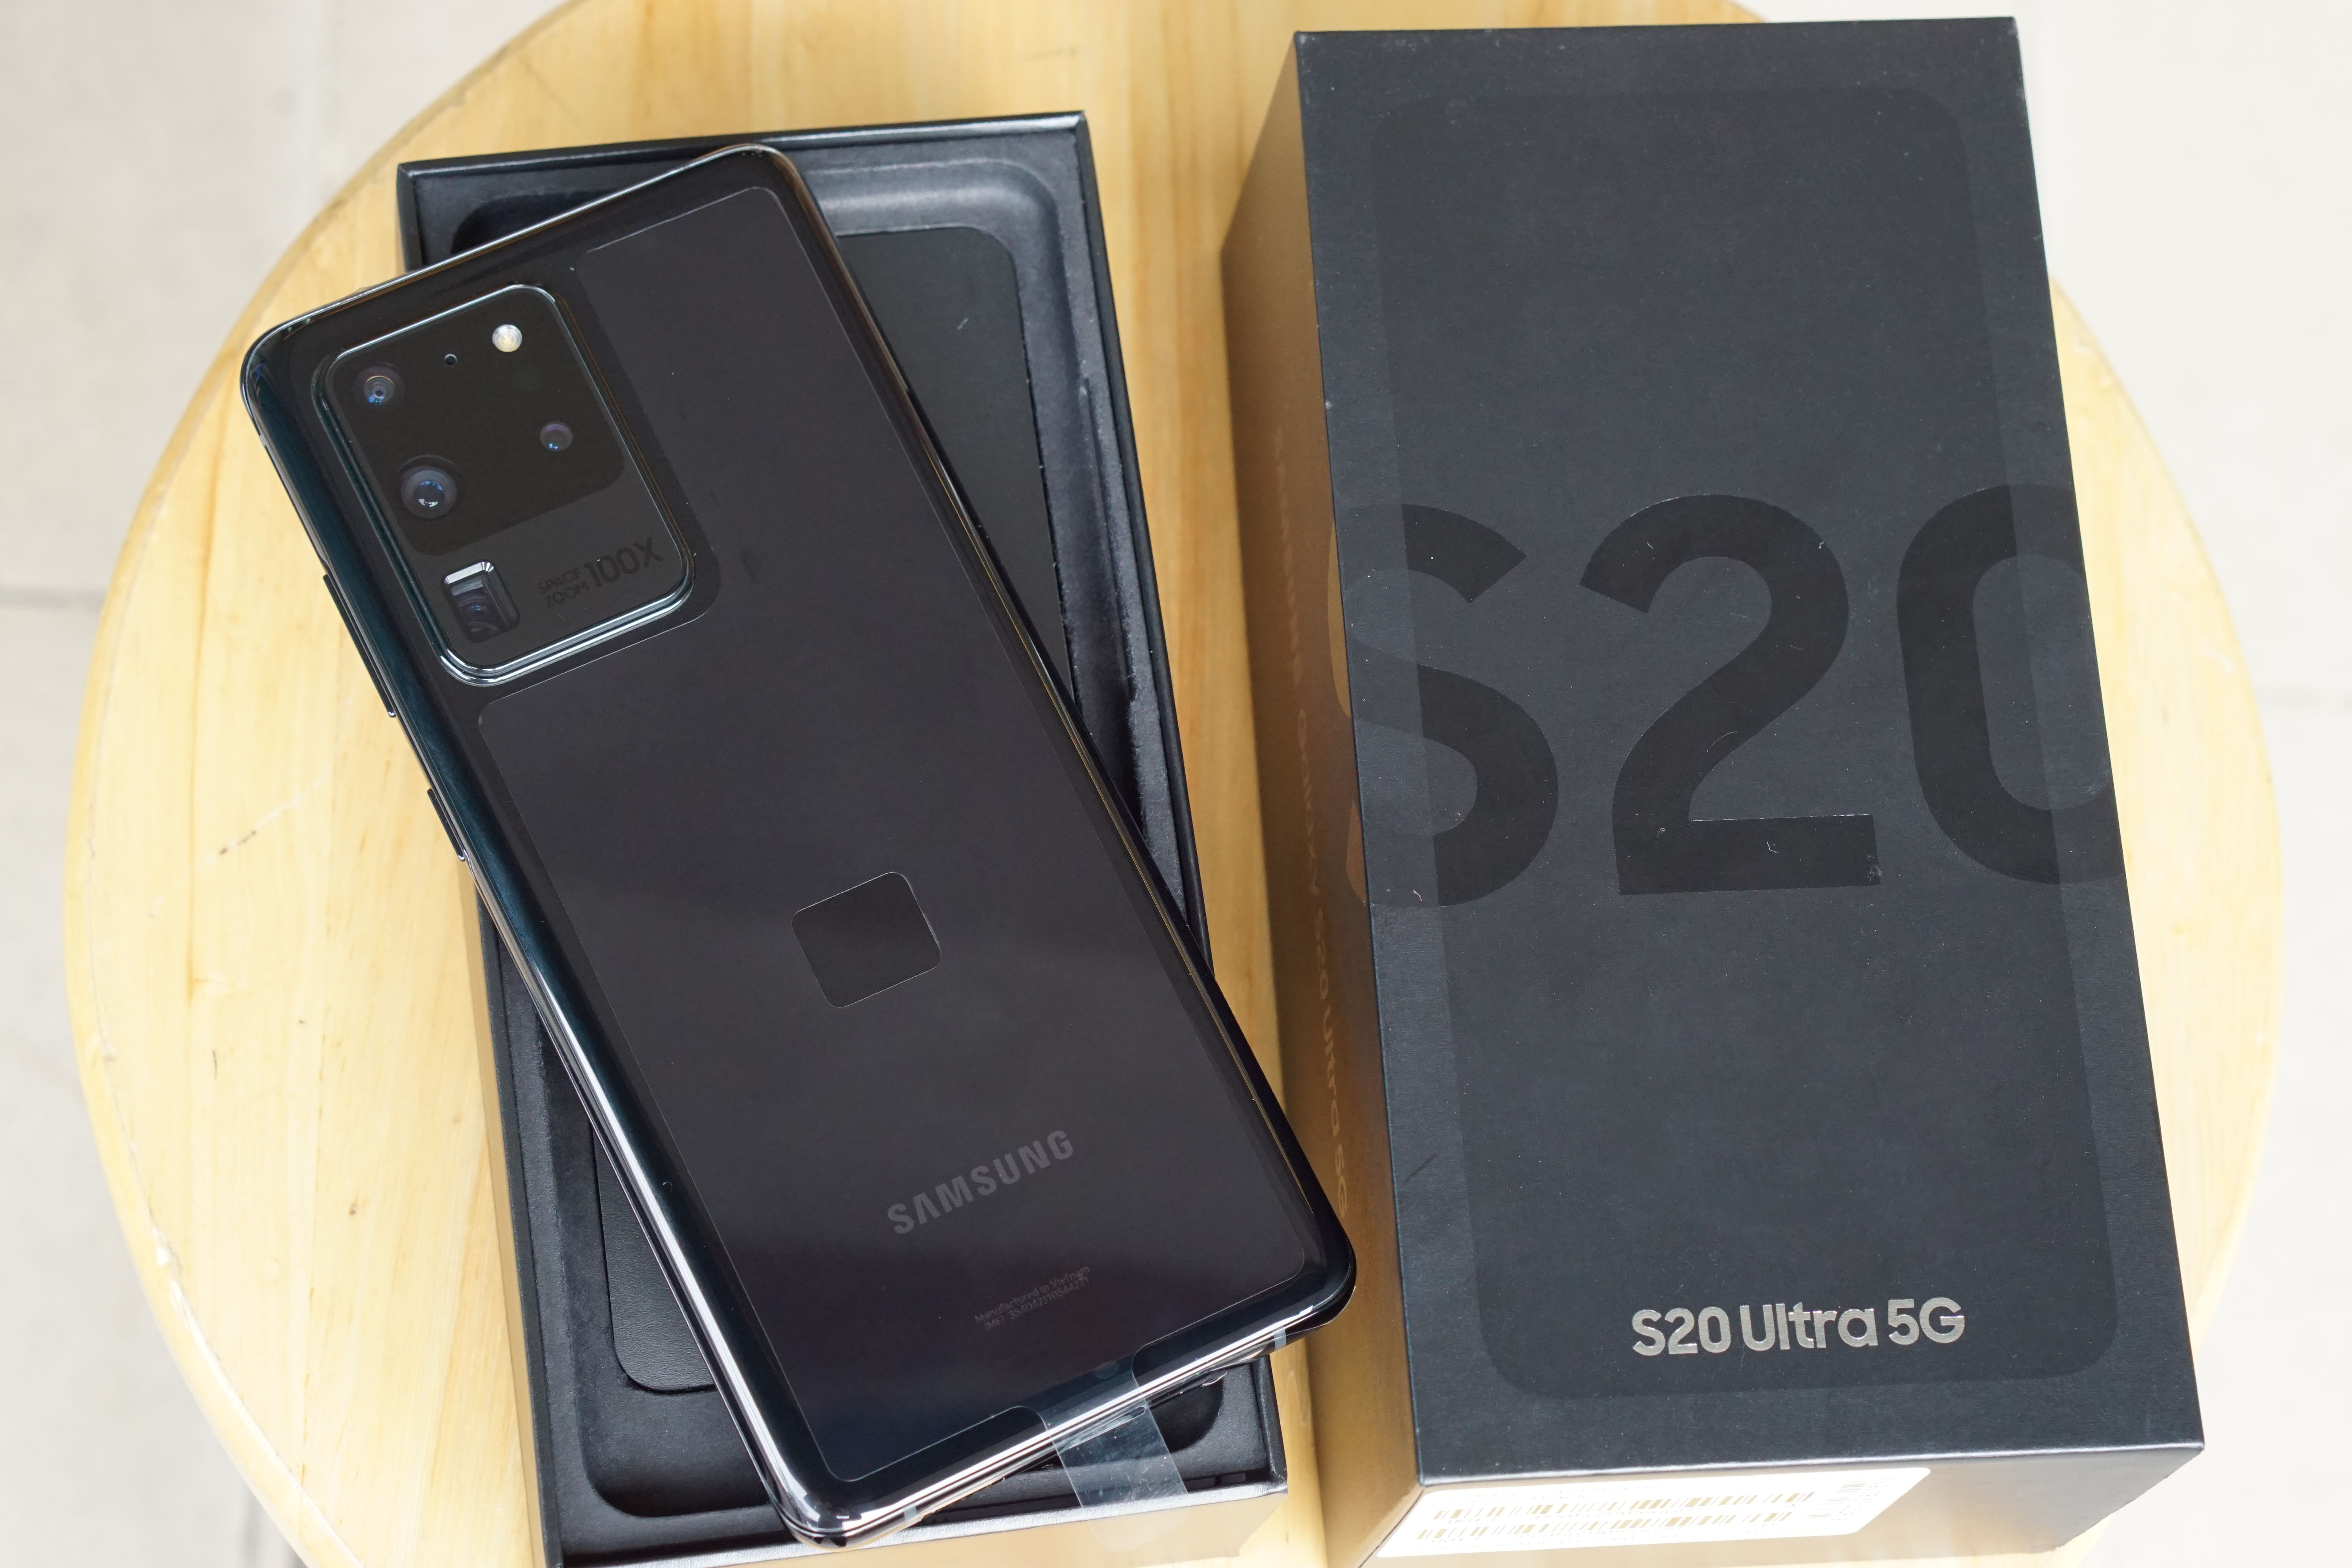 S20 Ultra 5G bản Hàn Quốc mới Fullbox - chíp Snap 865